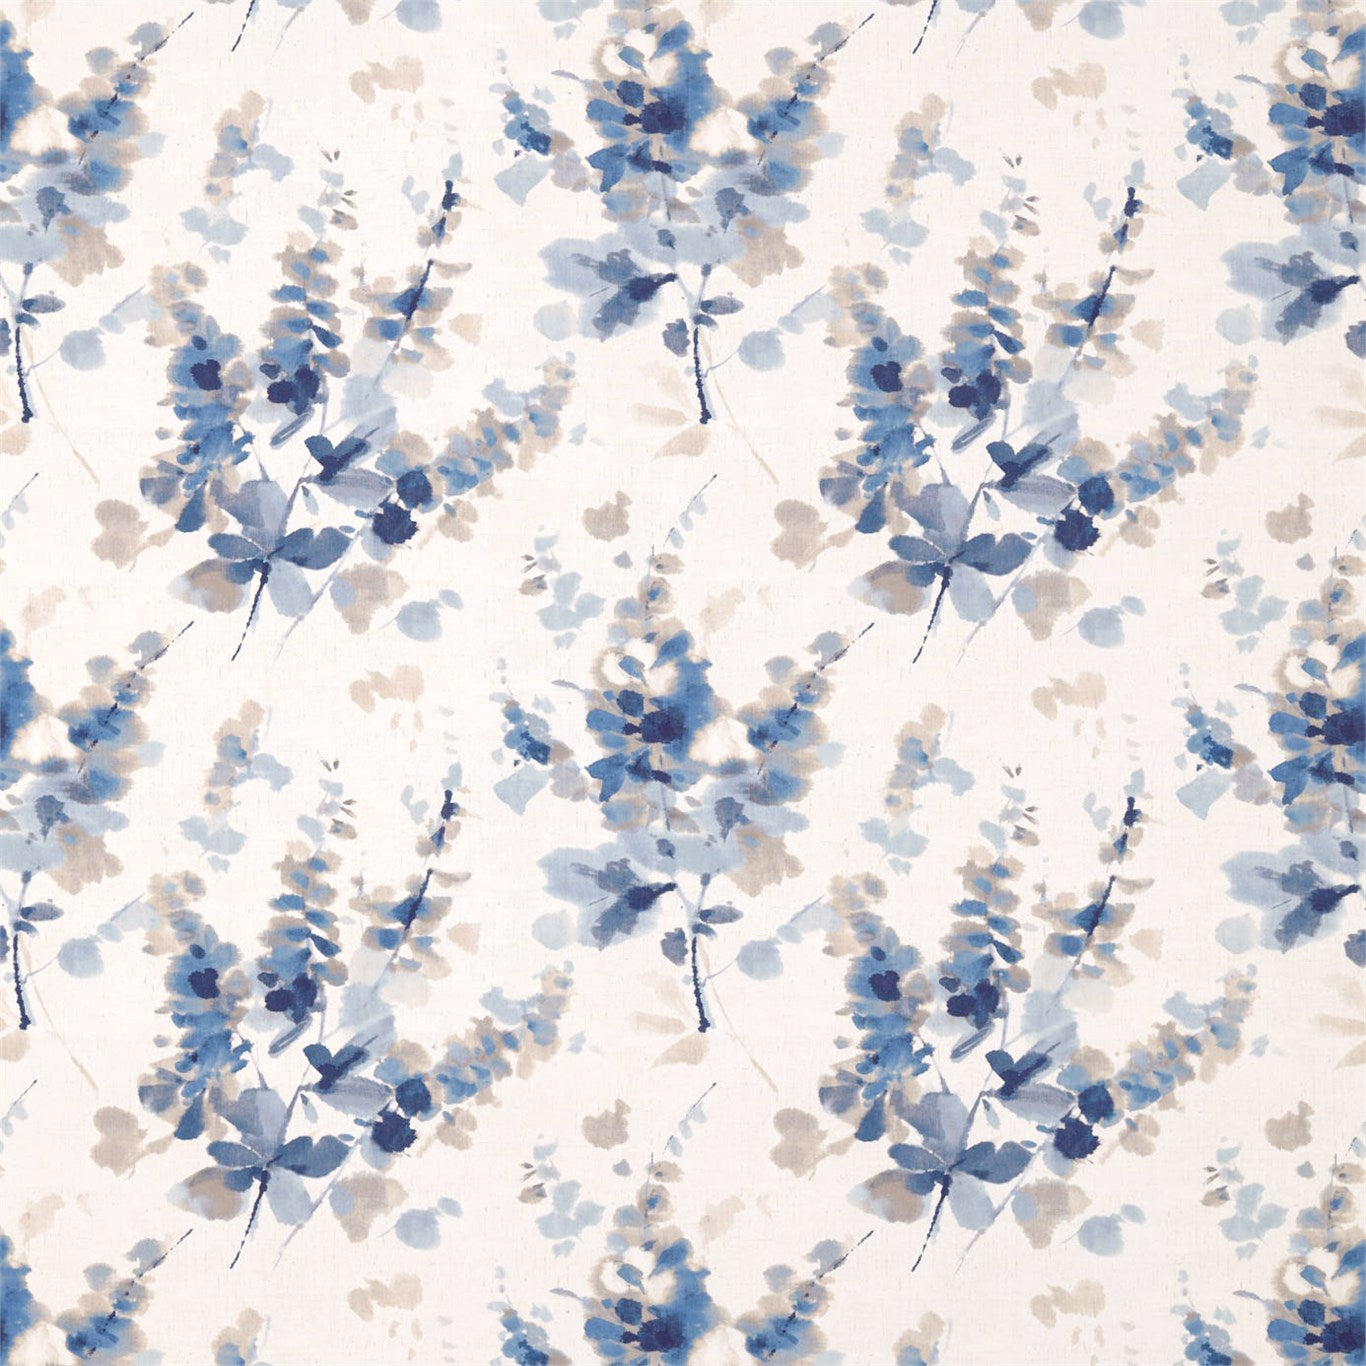 Delphiniums Fabric by Sanderson - DWAP226288 - Indigo